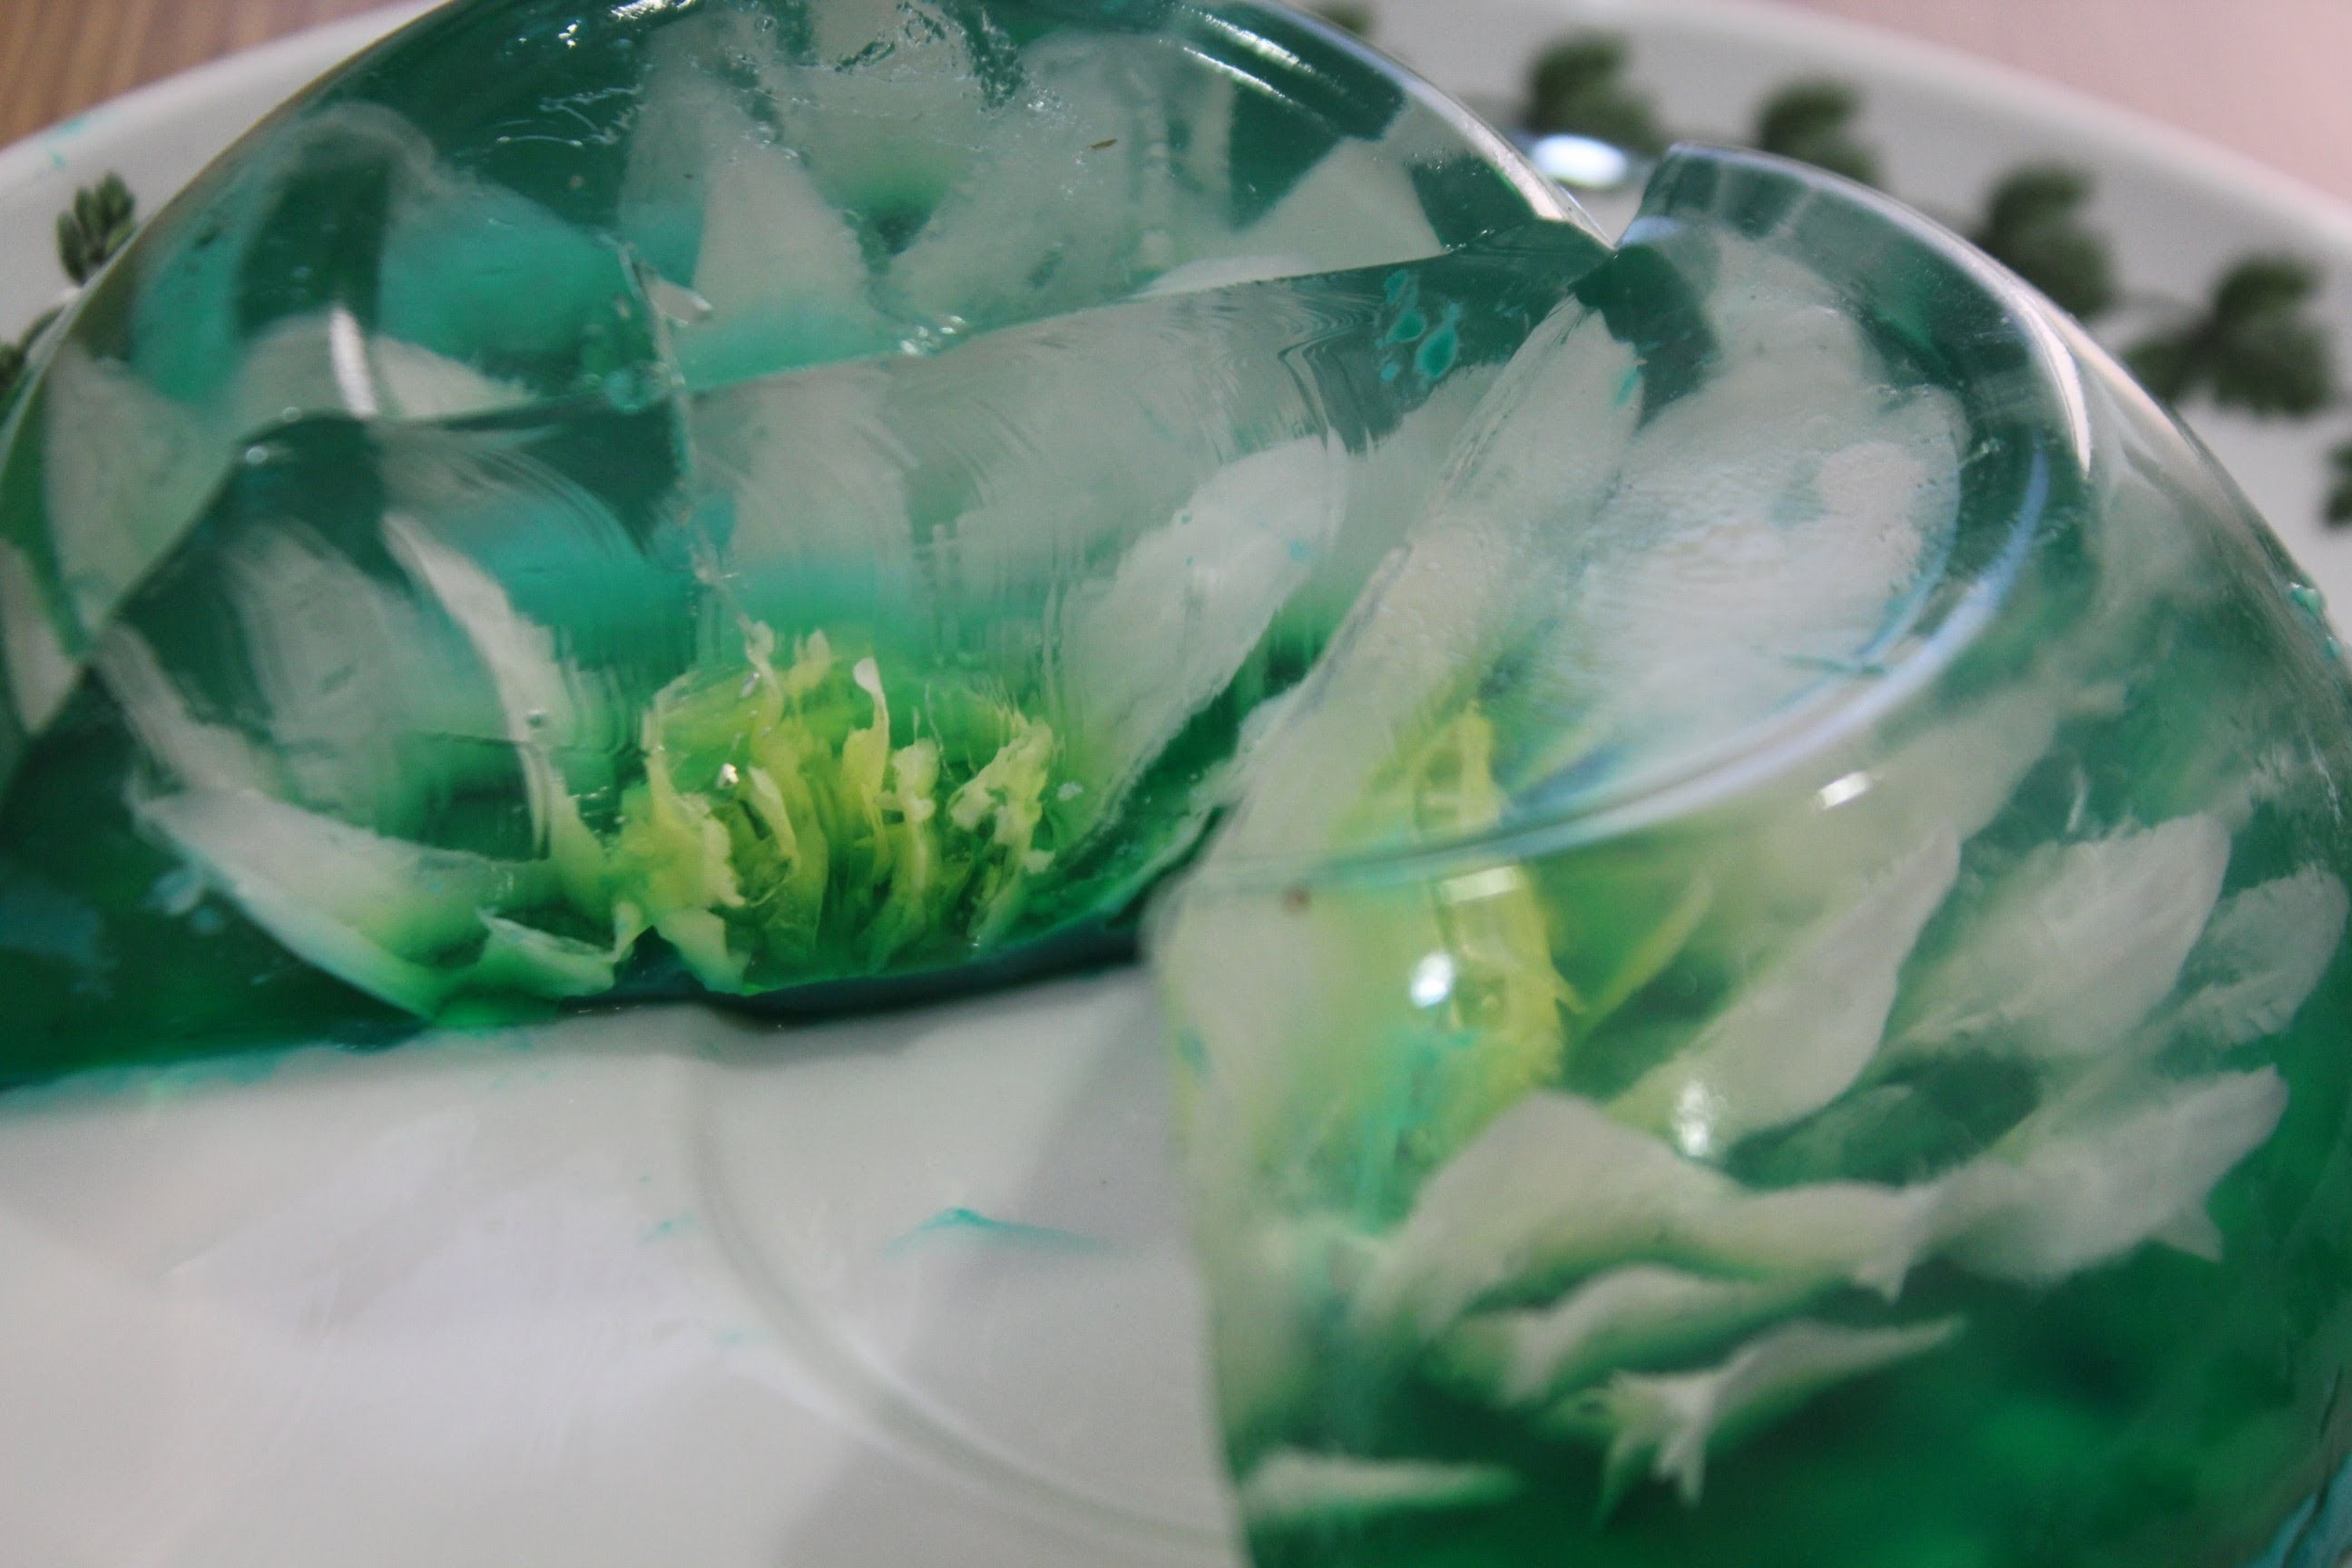 Cómo hacer flores en gelatina. Gelatina artística